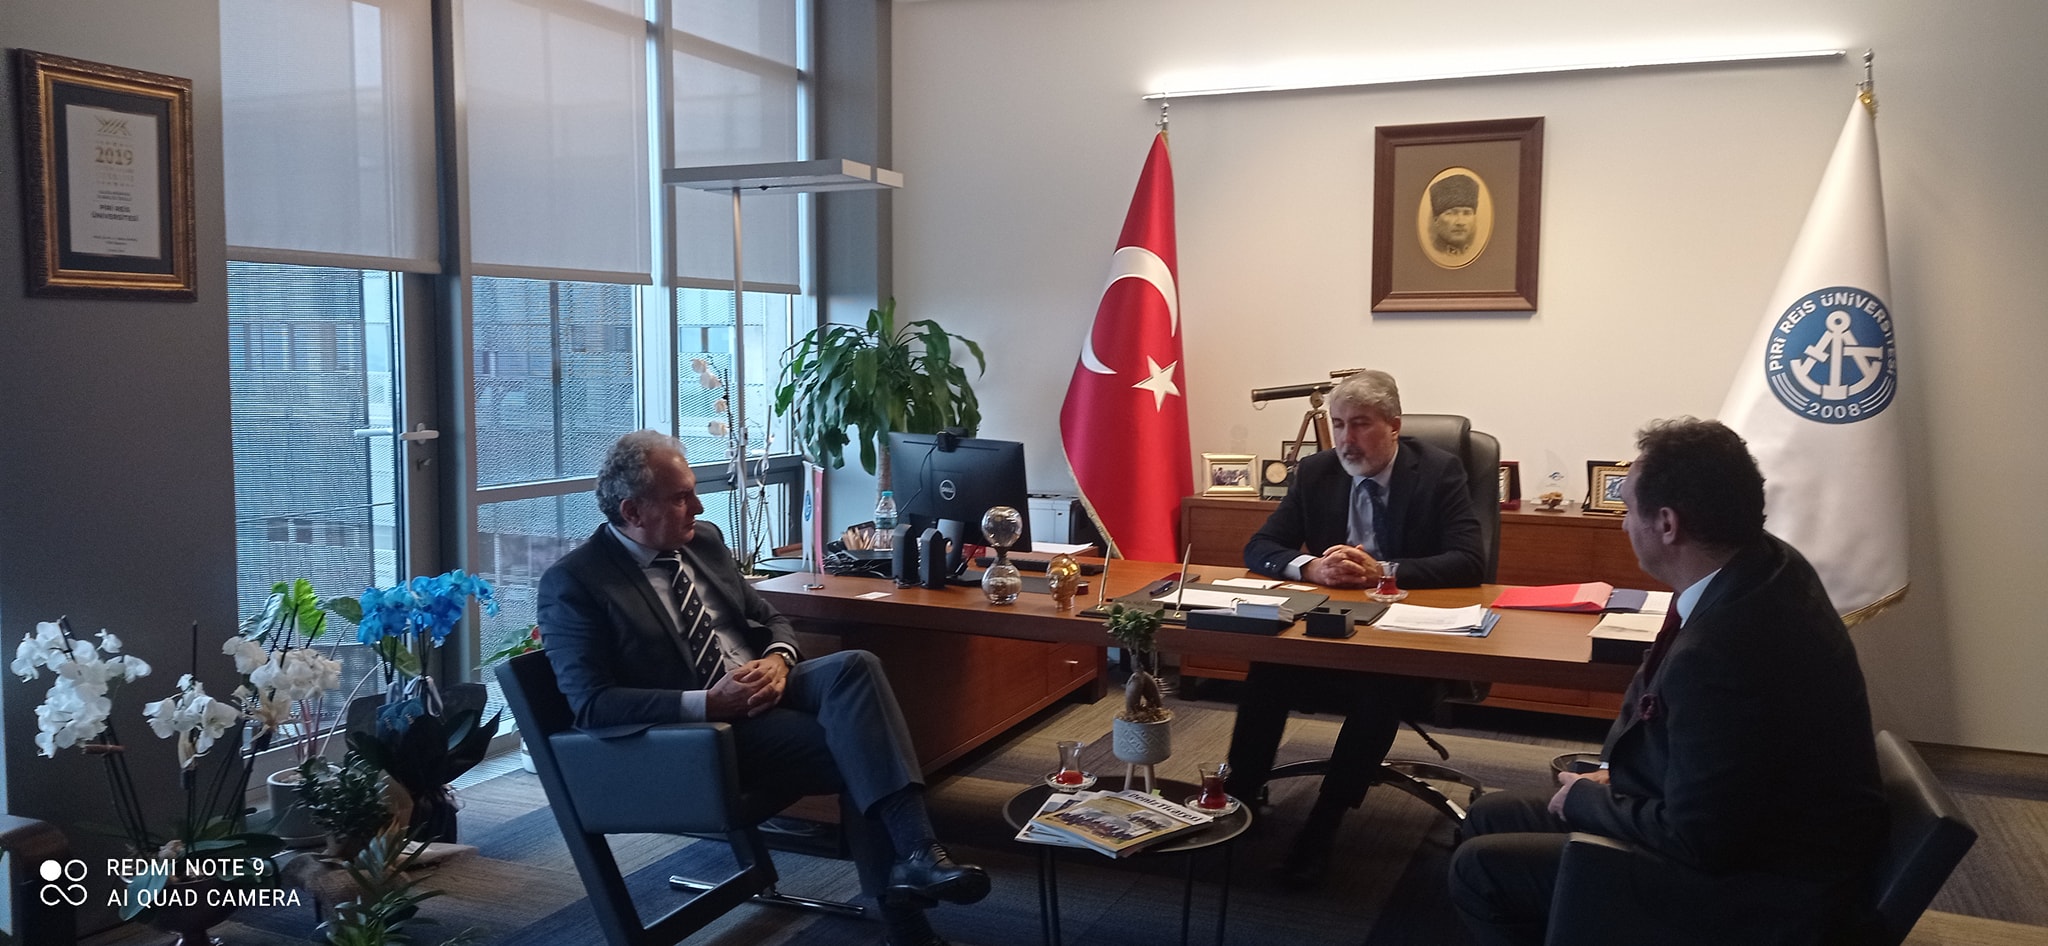  TMMOB GEMİMO Yönetim Kurulu Başkanı A.Yaşar Canca, Yönetim Kurulu 2. Başkanı Salih Bilal ve Yönetim Kurulu Üyesi Yunus Emre Aşkın tarafından makamında ziyaret edildi. 